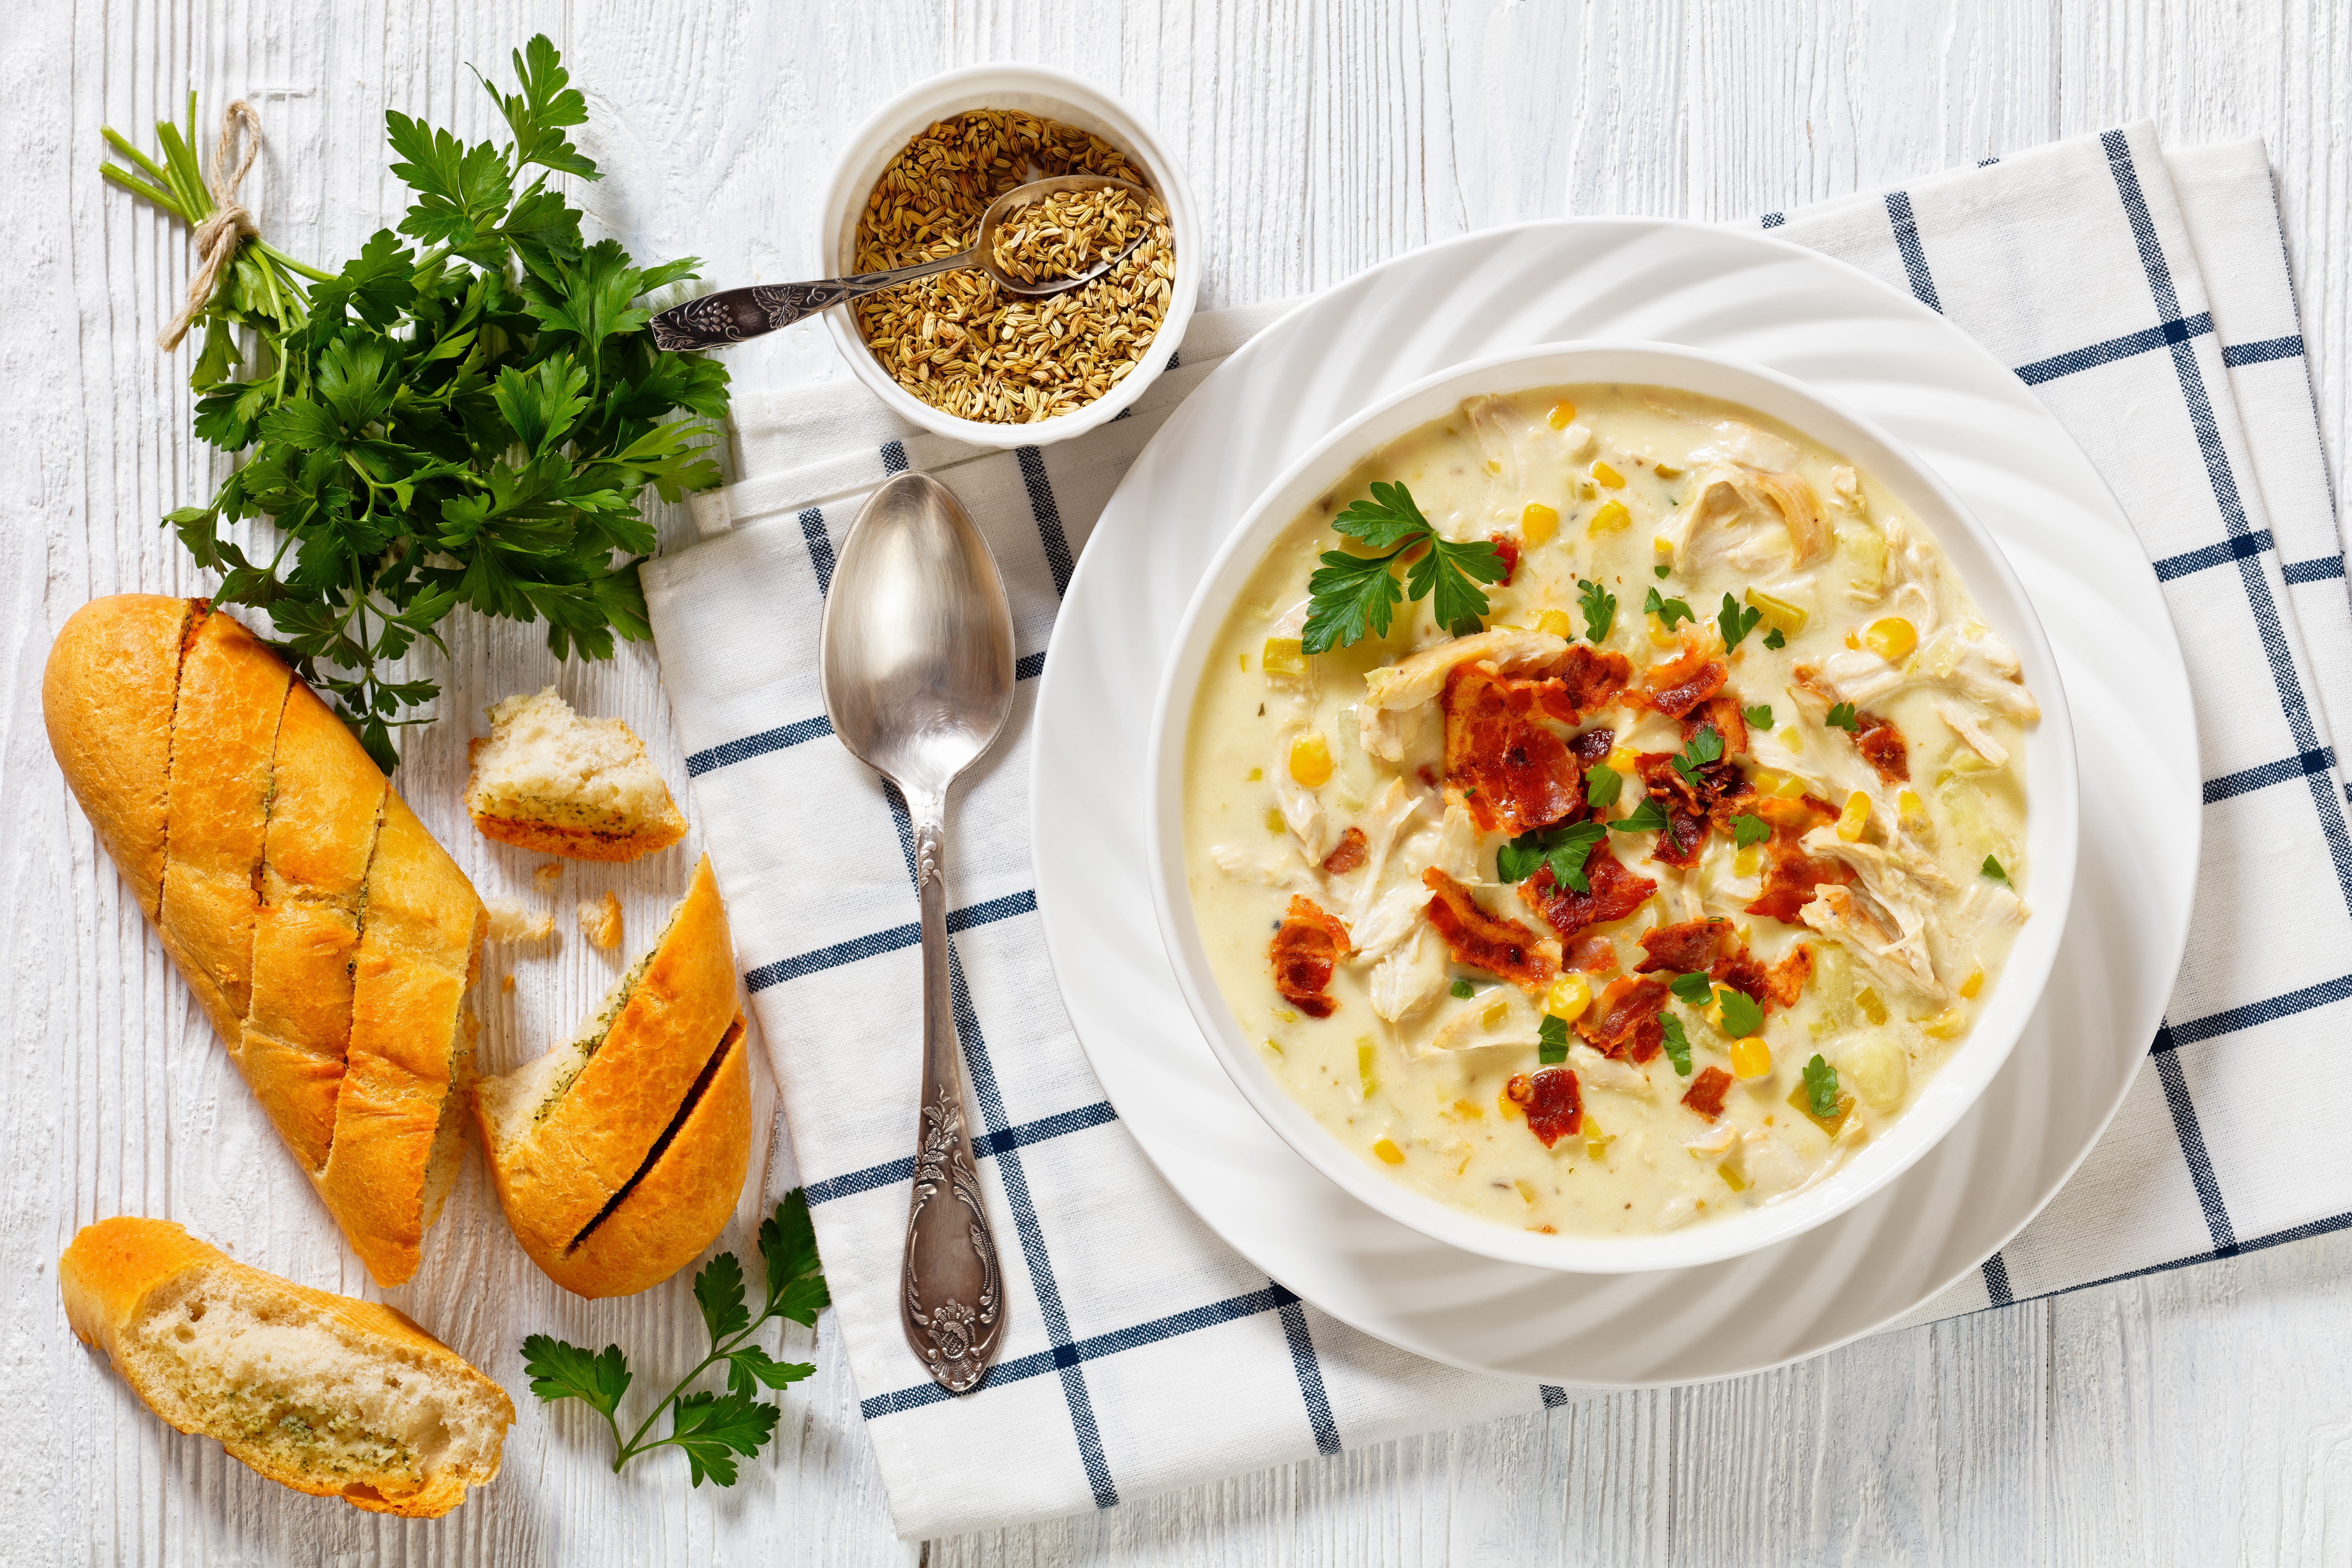 Phần thức ăn còn thừa cũng có thể nấu thành súp đặc, ăn kèm với bánh mì hoặc bánh ngọt để tăng khẩu vị. (Ảnh: Shutterstock)